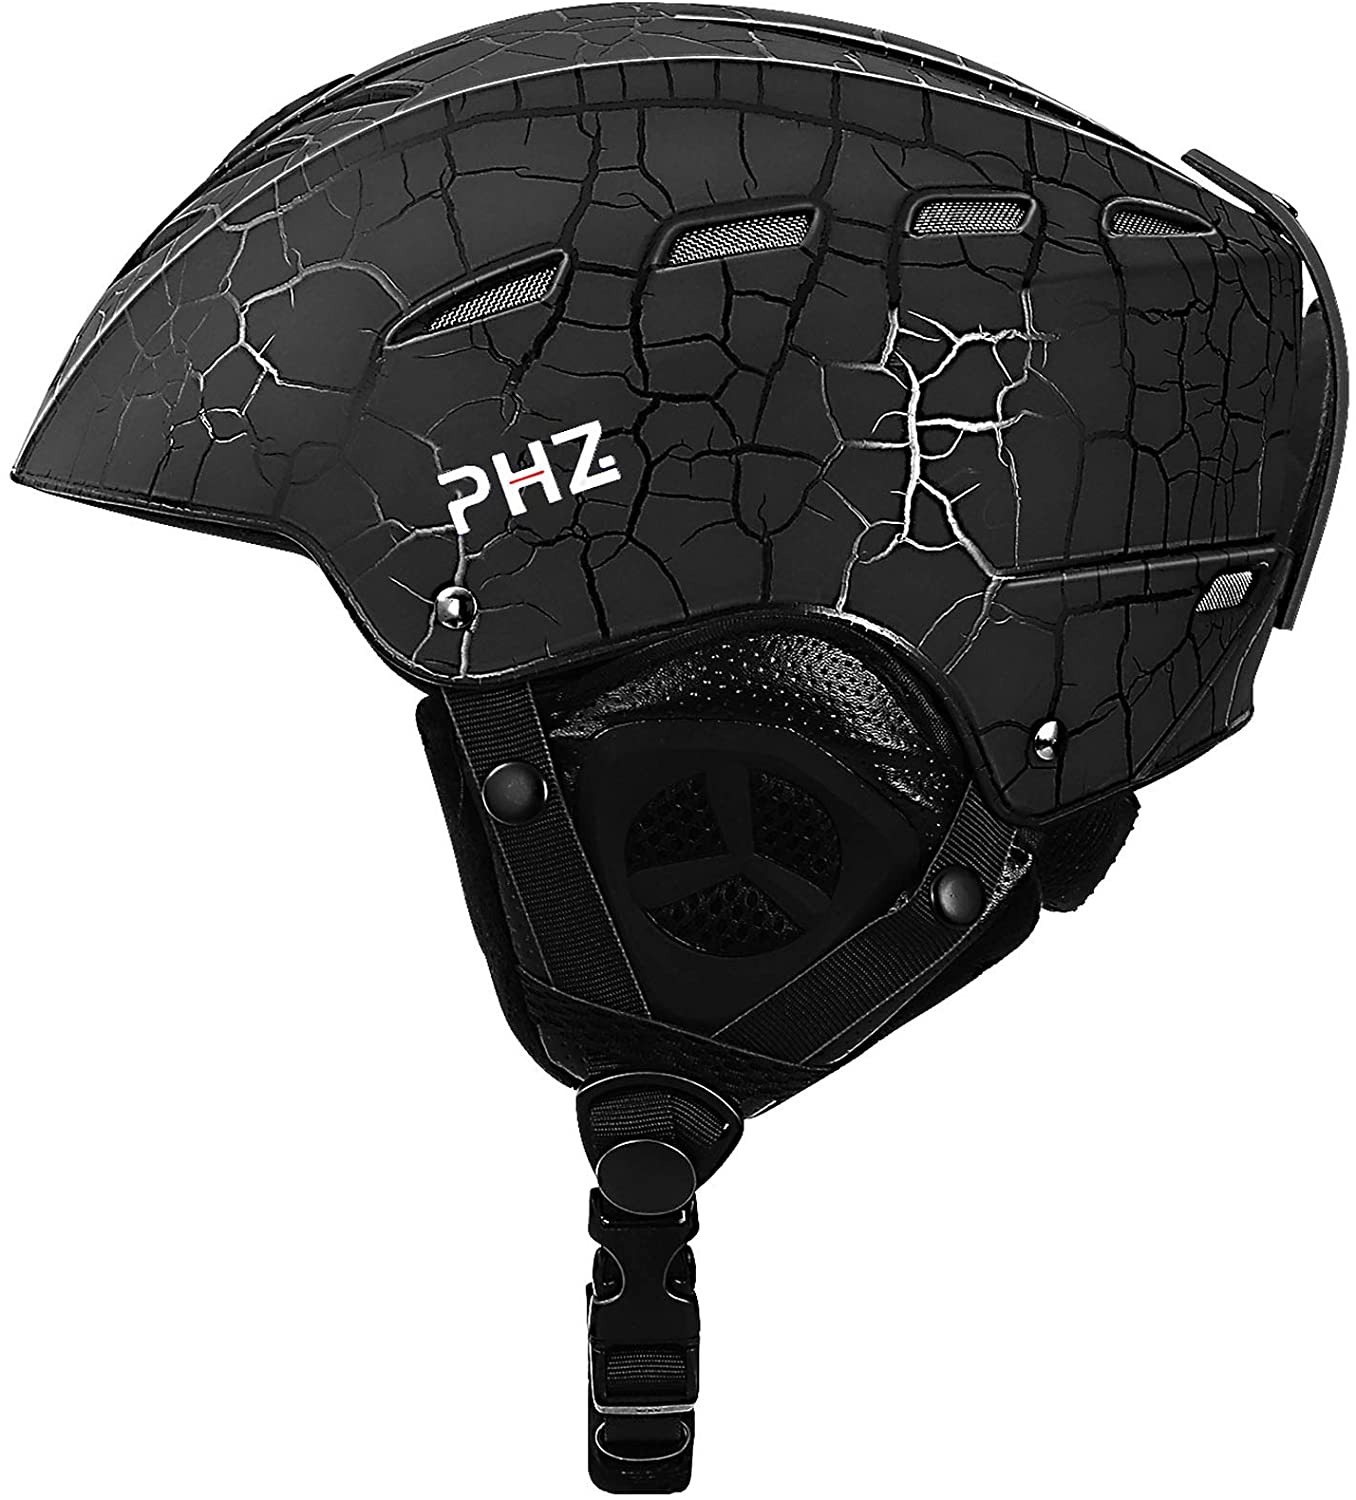 PHZ. Adjustable Lightweight Adult Ski Helmet